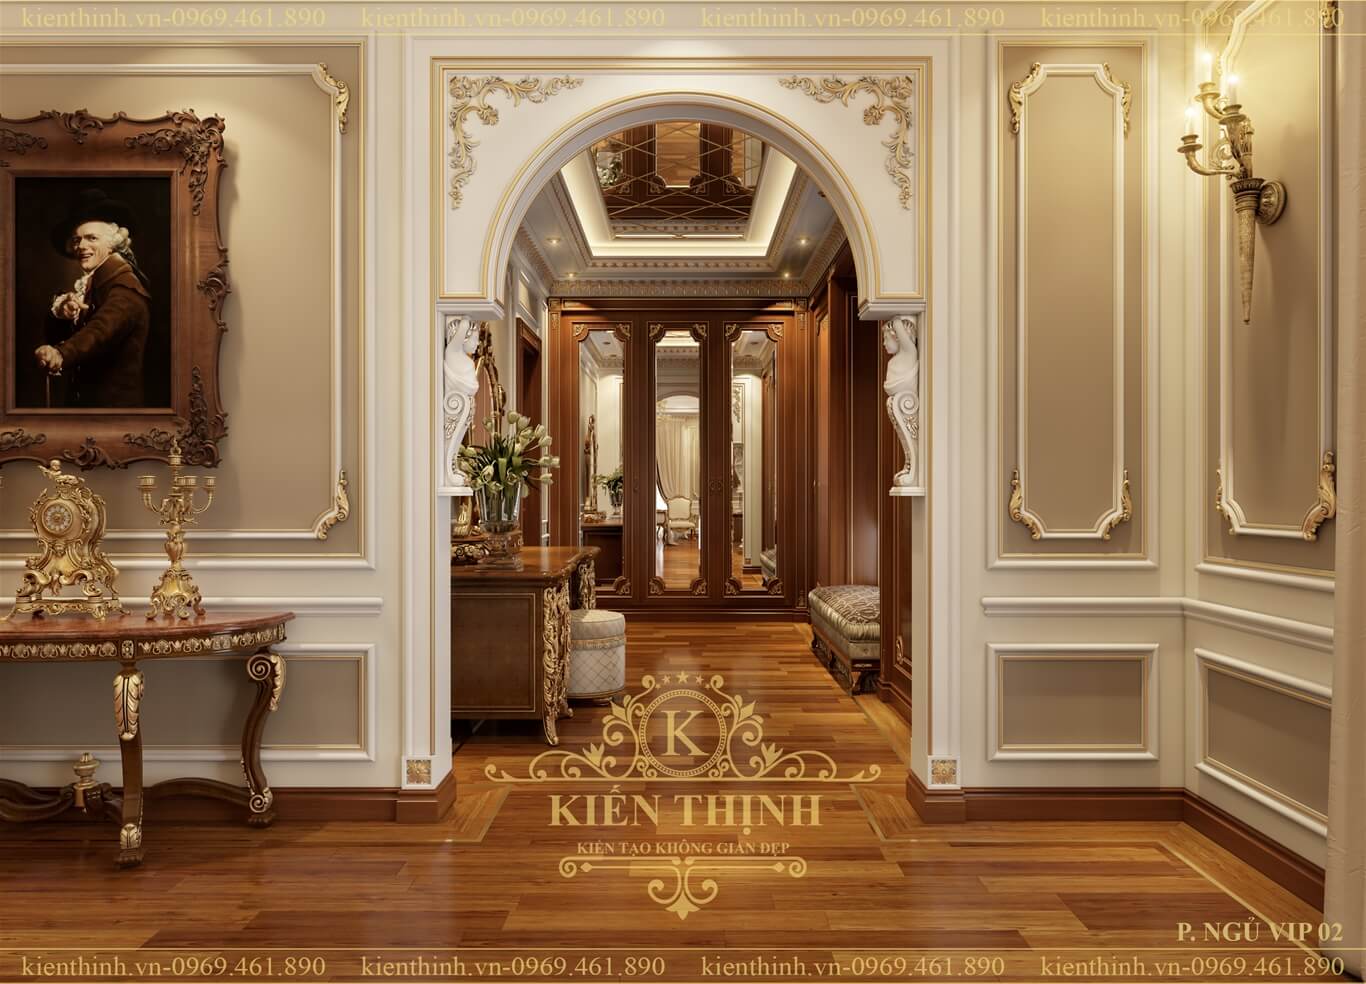 Mẫu thiết kế nội thất phòng ngủ phong cách tân cổ điển cho lâu đài đẹp quý phái tại Đồng Nai luxury bedroom classical